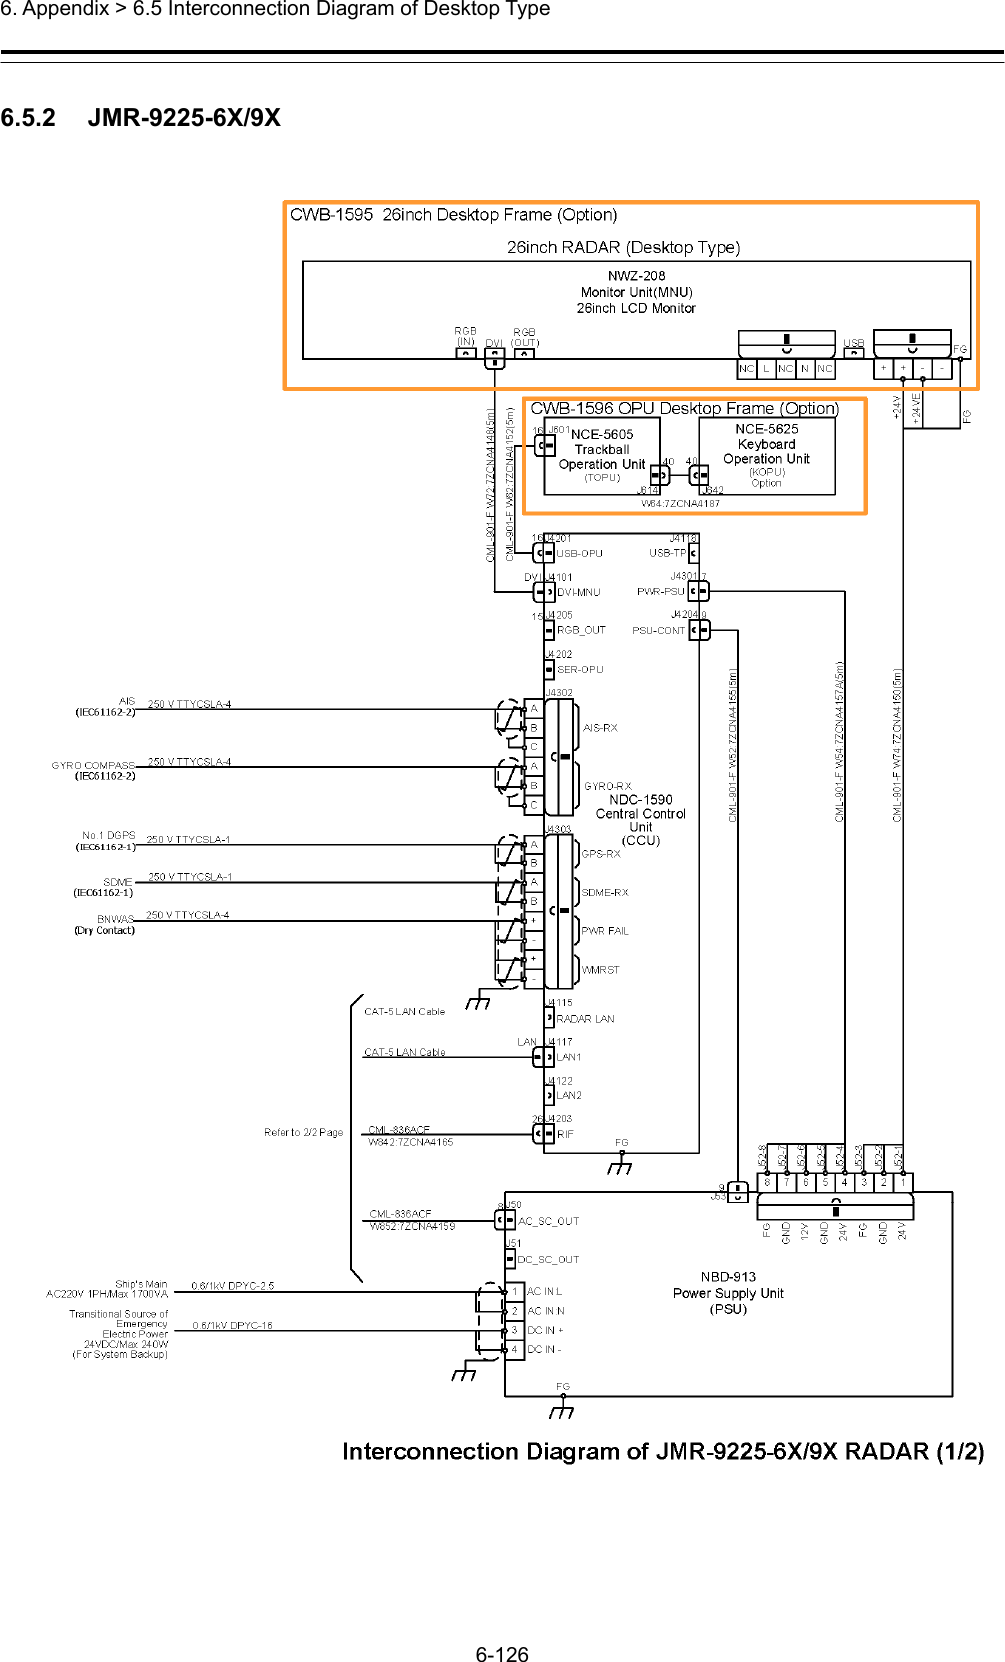  6. Appendix &gt; 6.5 Interconnection Diagram of Desktop Type 6-126  6.5.2   JMR-9225-6X/9X  